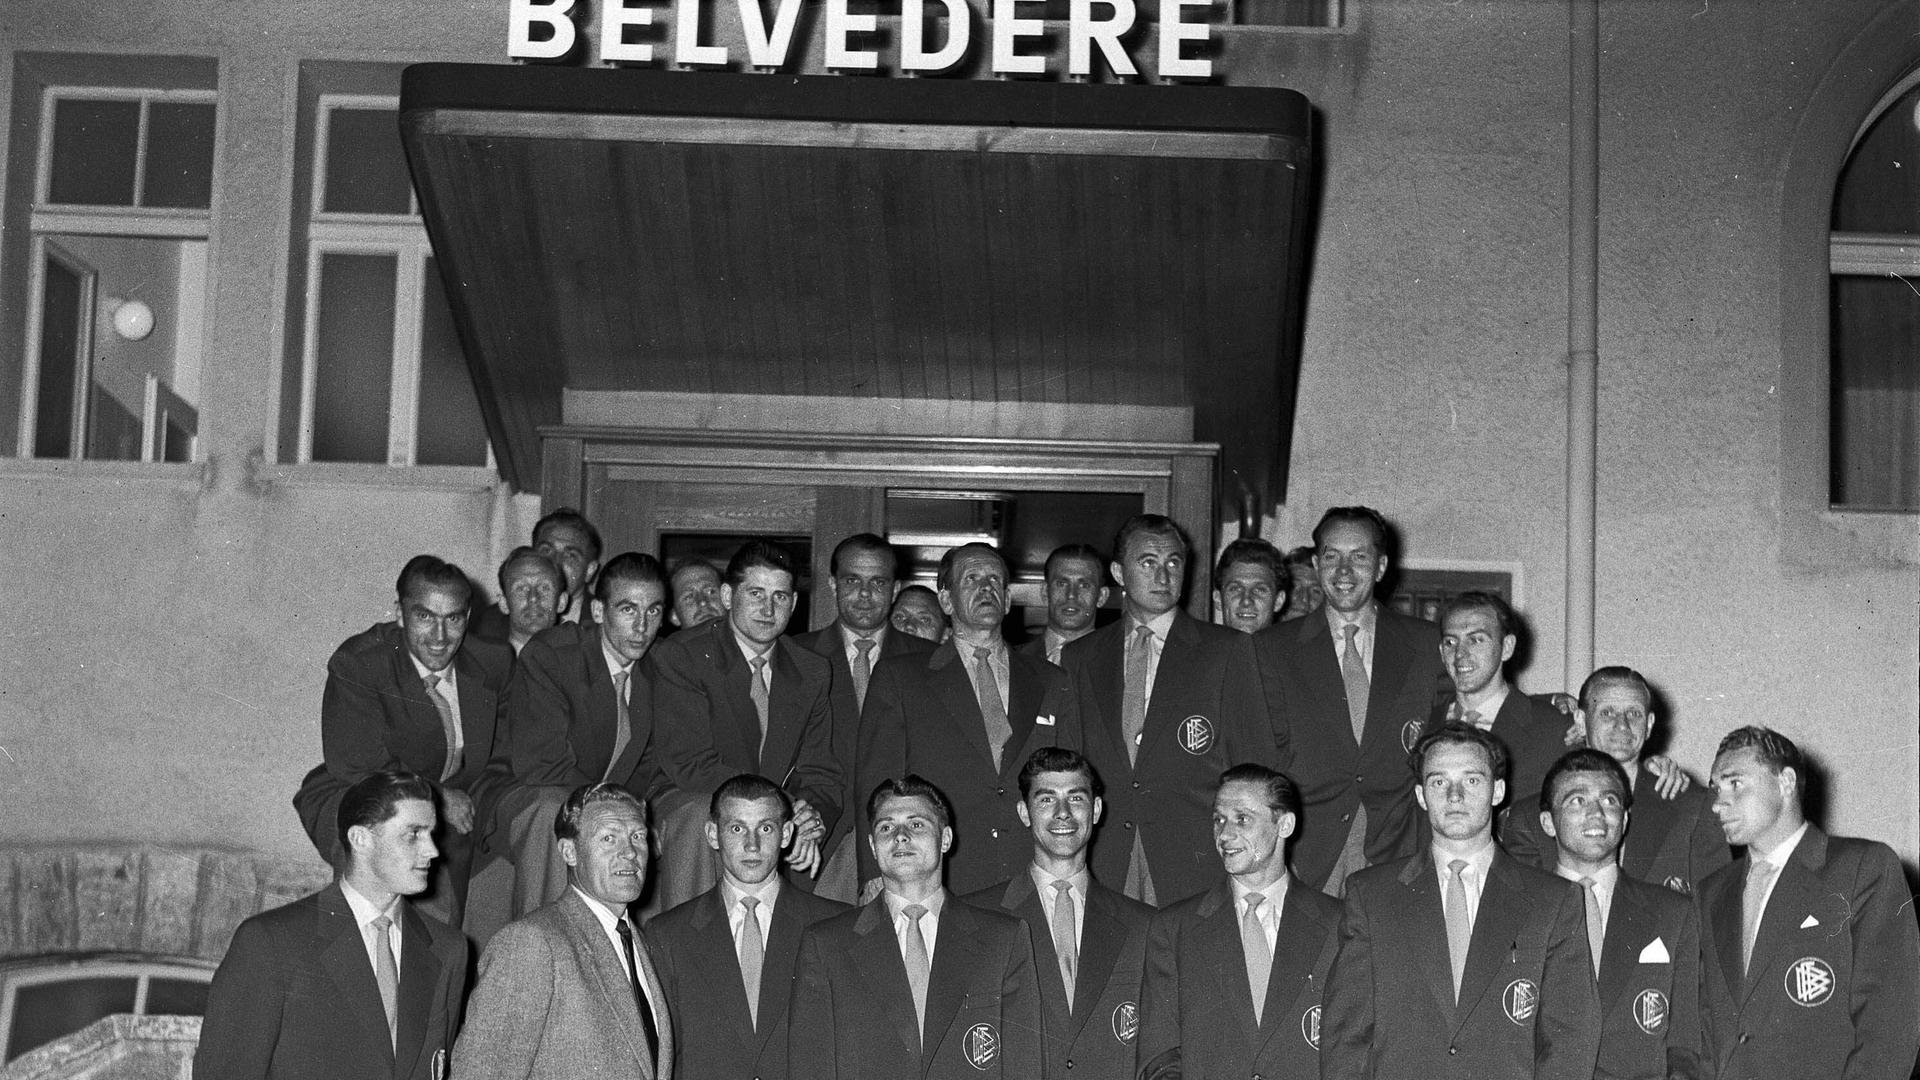 Die deutsche Fussballmannschaft posiert in Zivilkleidung auf einer Treppe vor dem Hotel Belvédère in Spiez.